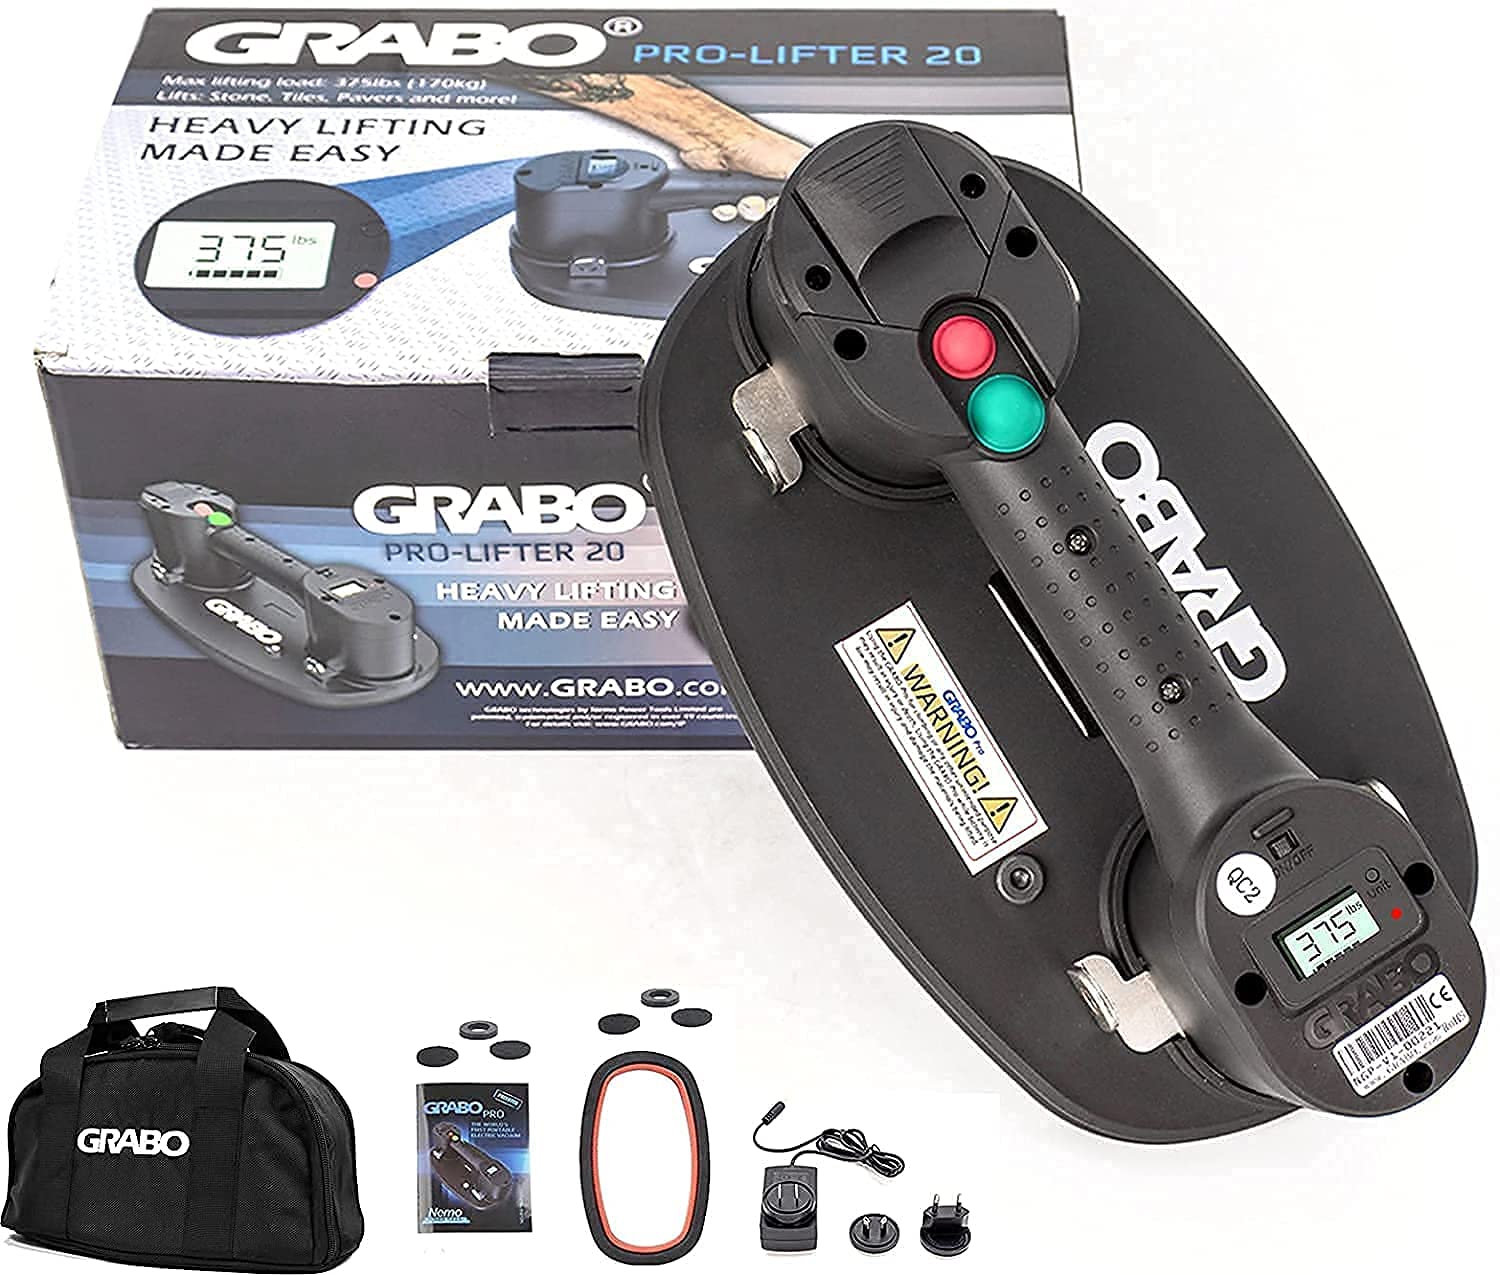  GRABO PRO-Lifter-20 電気真空吸盤 (2021) タイル、石、木材、ガラス、コンクリート舗装機、乾式壁用。自動シャットオフスイッチ付きで最大375ポンドまで...